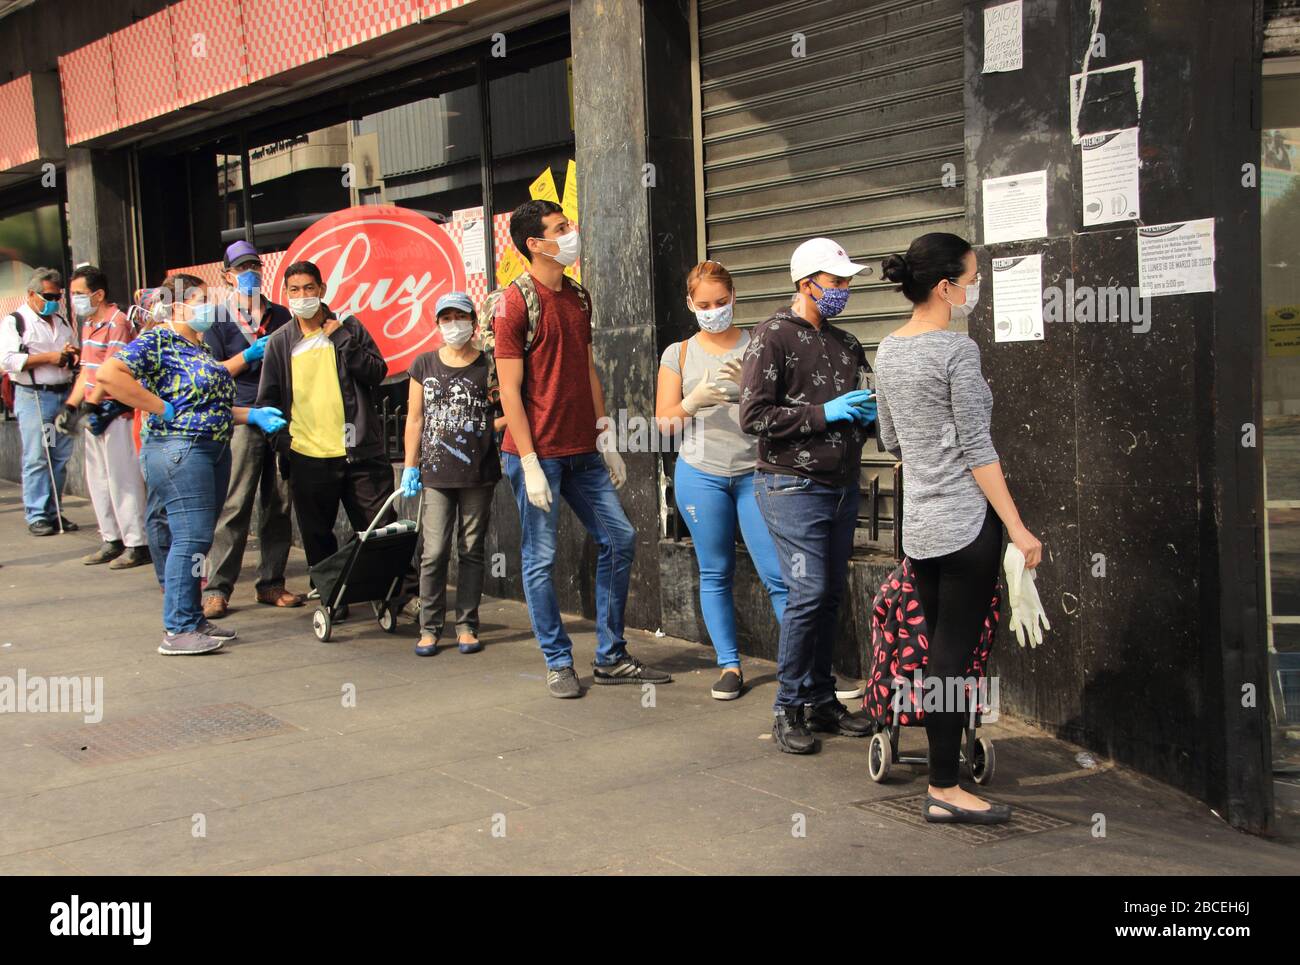 Caracas, Venezuela 31 de marzo de 2020: Personas que usan máscaras protectoras en línea esperando turnos para entrar en el supermercado durante una crisis de cuarentena Foto de stock